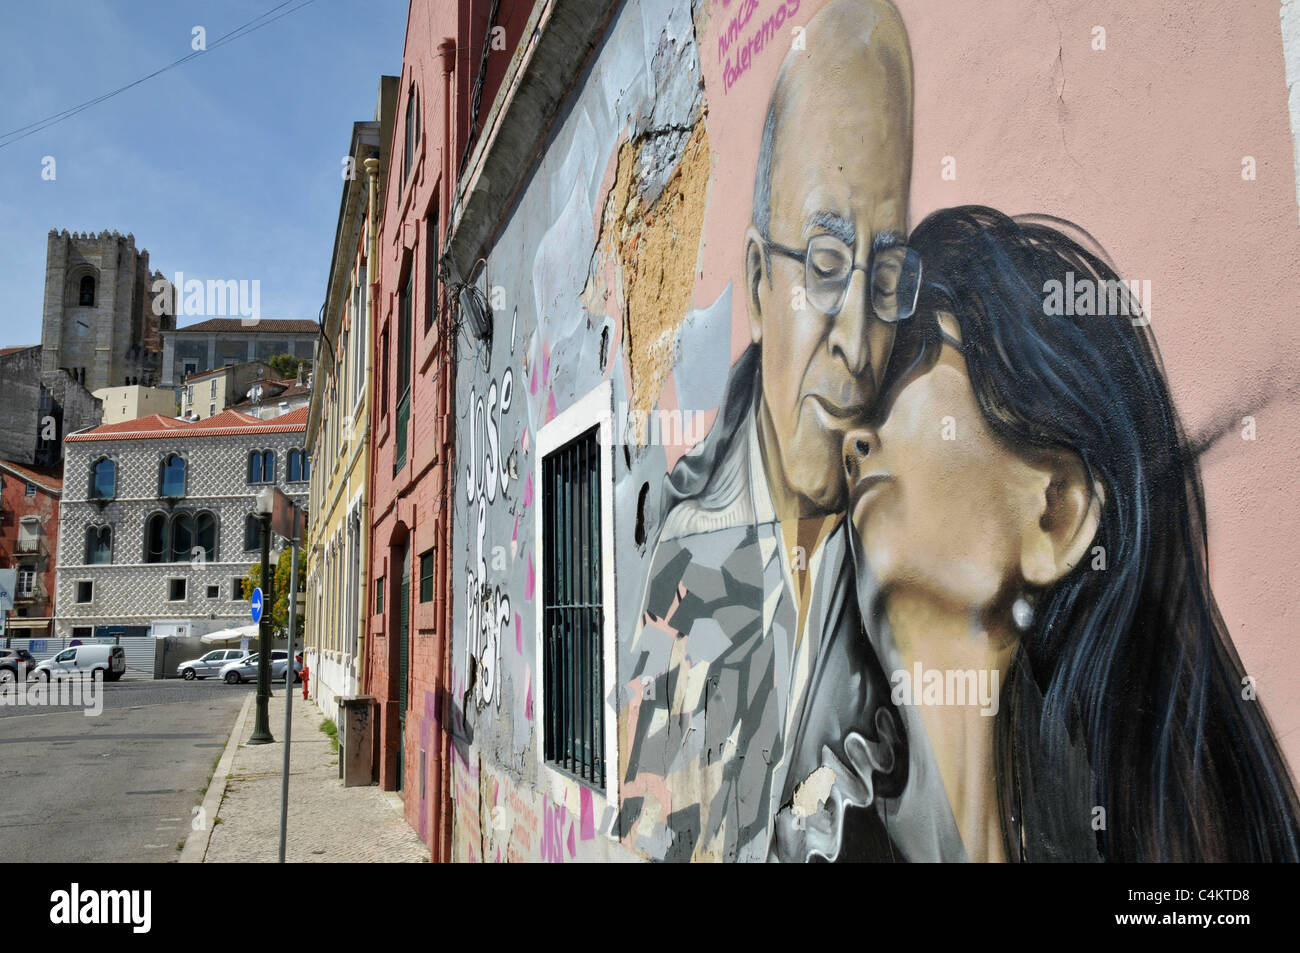 Jose Saramago et Pilar del Rio, un graffiti sur un mur près de la Fondation Saramago, Lisbonne, Portugal Banque D'Images